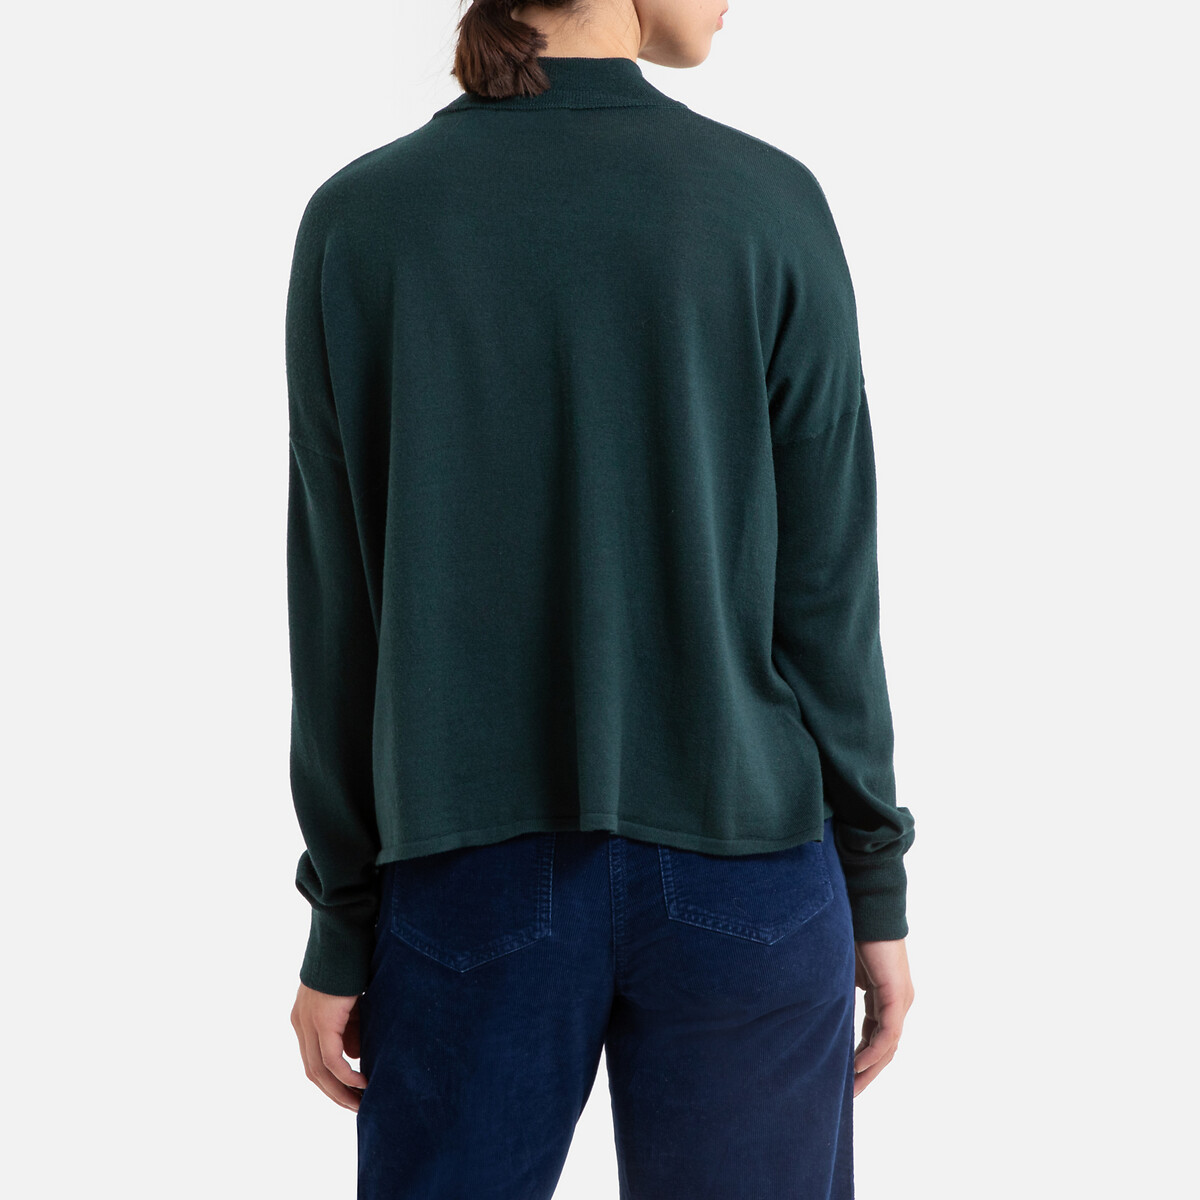 Пуловер La Redoute С воротником-стойкой из тонкого трикотажа MASSA XS зеленый, размер XS - фото 3